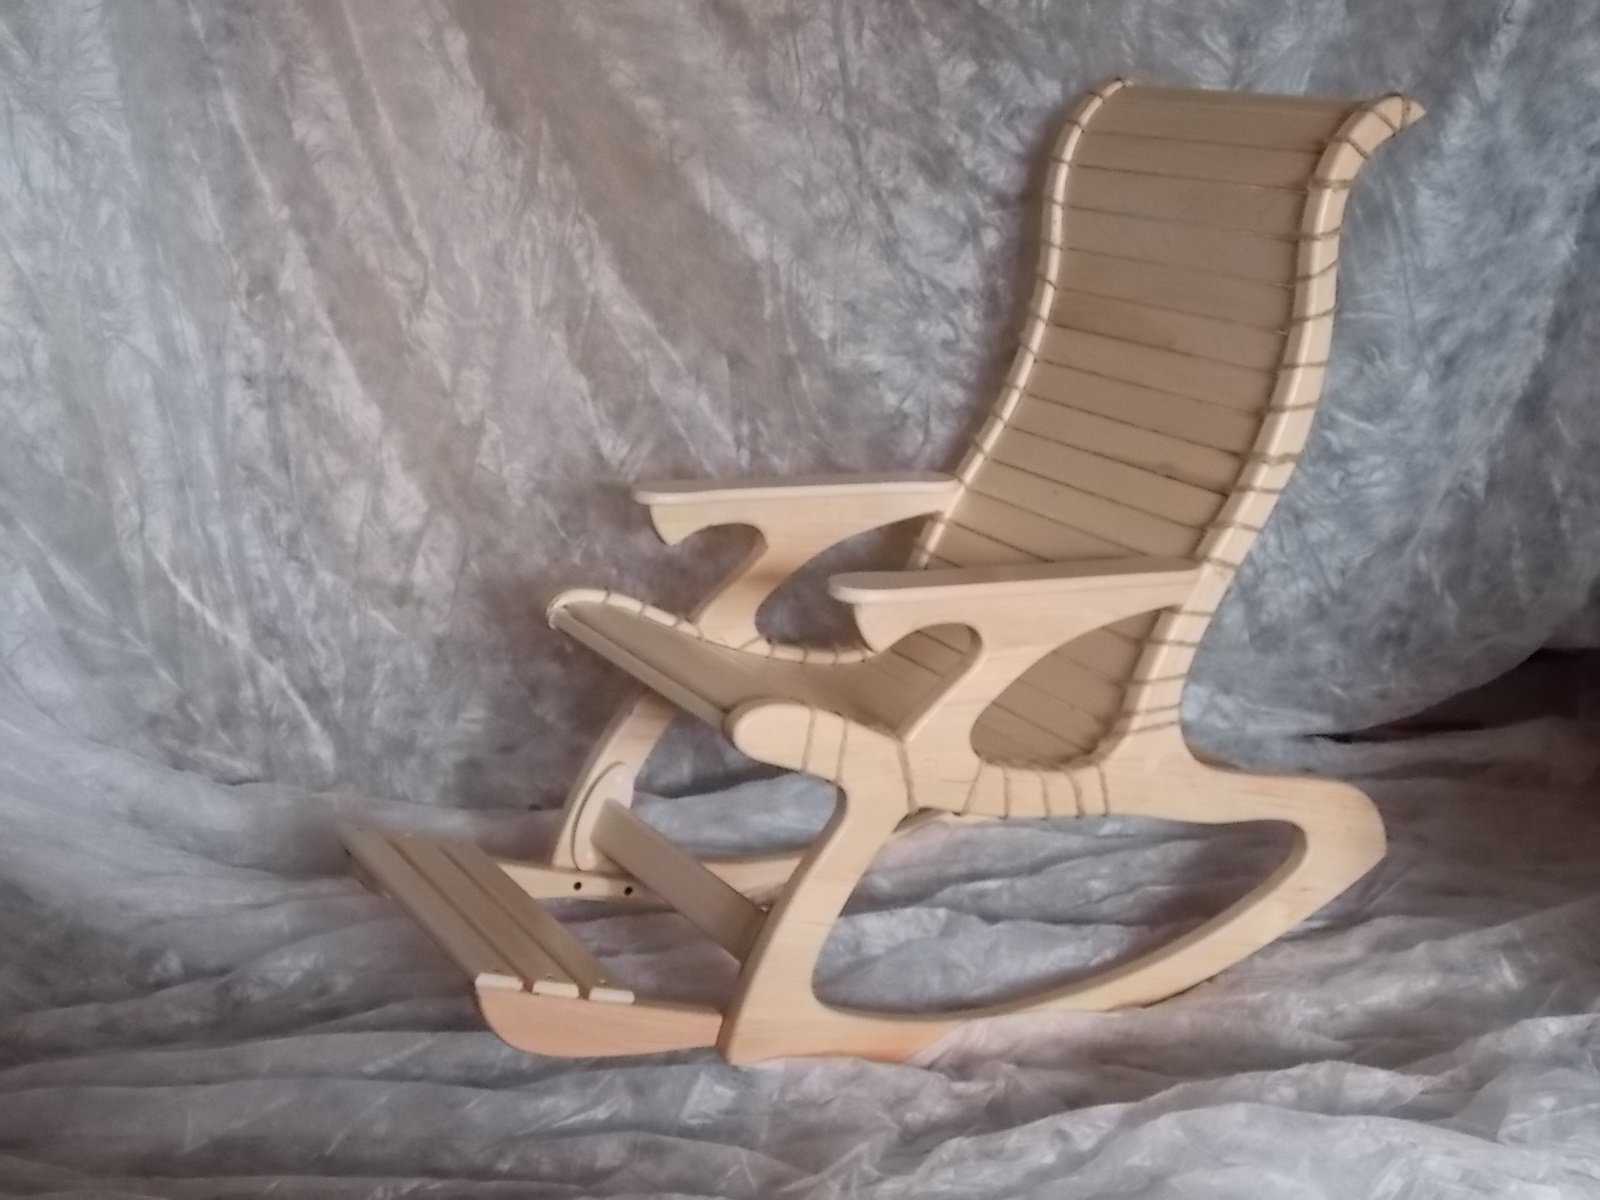 Чертеж складного стула своими руками из дерева позволит легко сделать удобную мебель